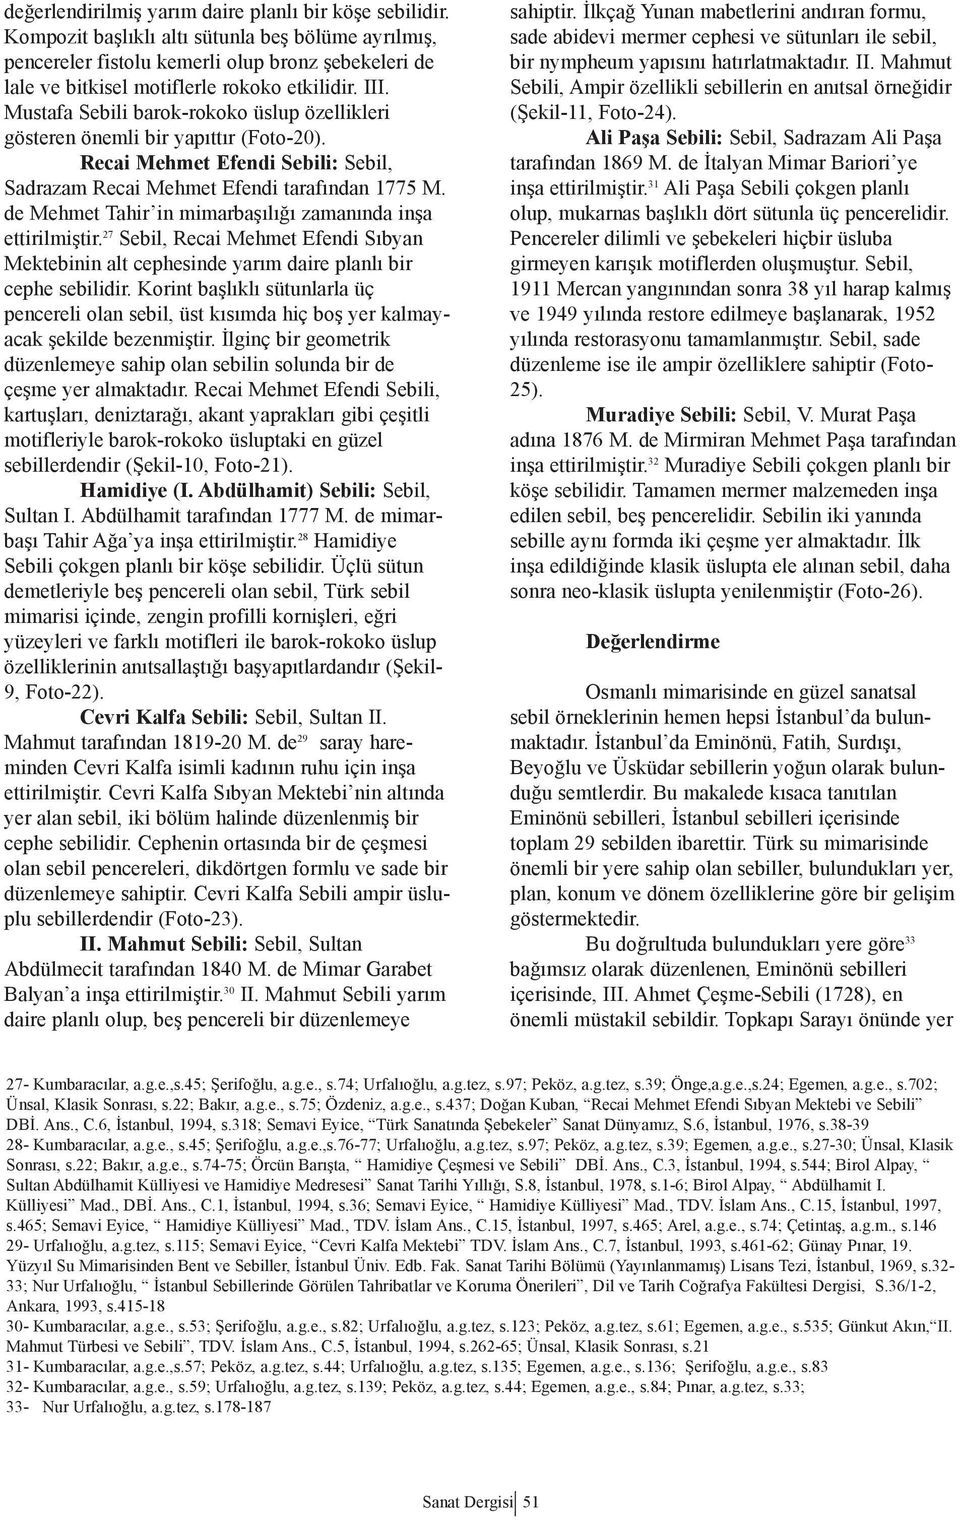 Mustafa Sebili barok-rokoko üslup özellikleri gösteren önemli bir yapıttır (Foto-20). Recai Mehmet Efendi Sebili: Sebil, Sadrazam Recai Mehmet Efendi tarafından 1775 M.